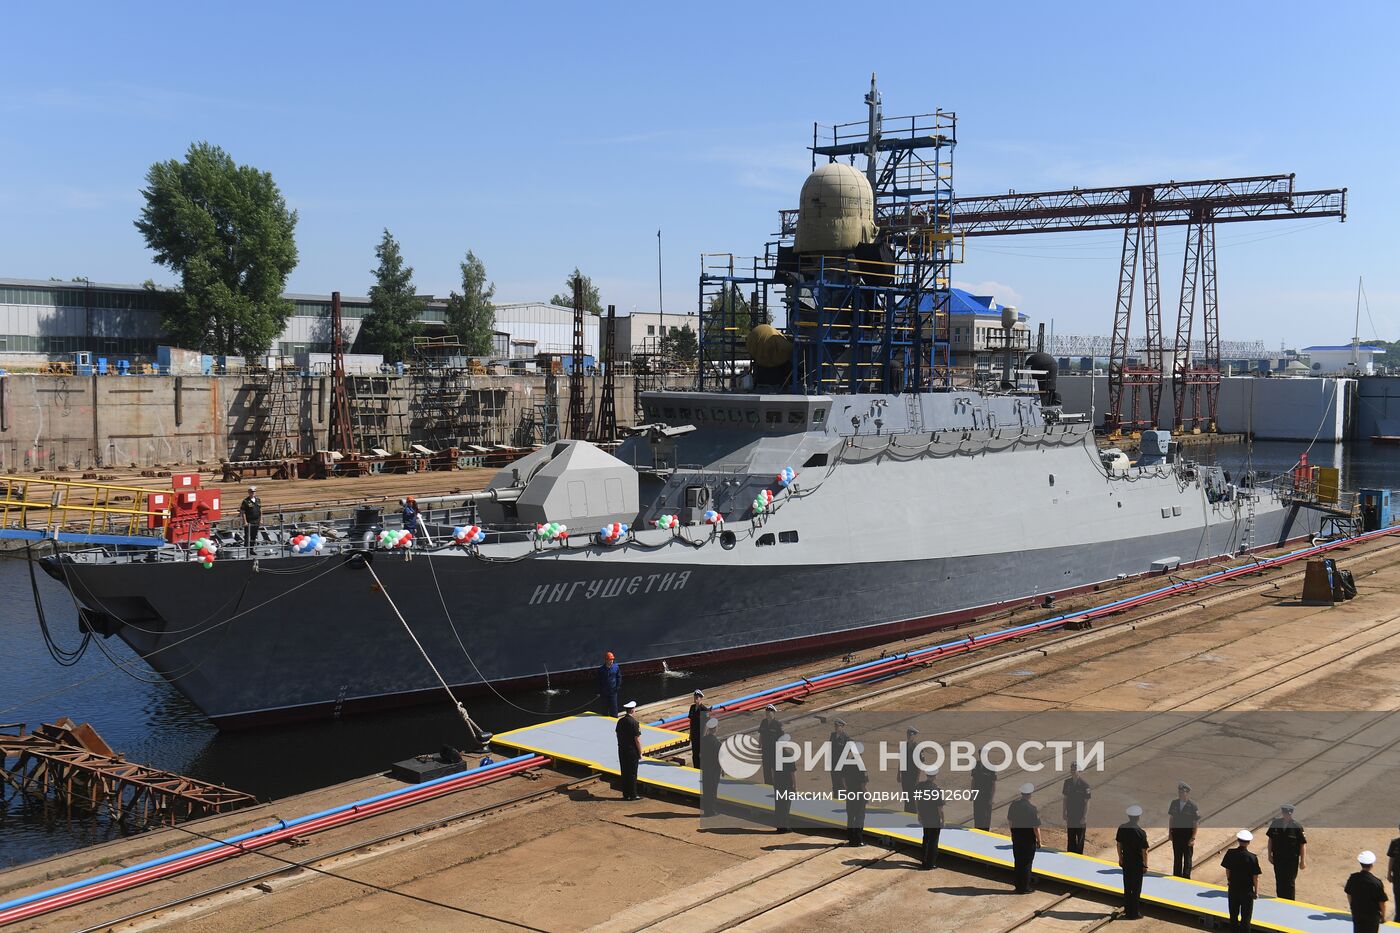 Спуск на воду малого ракетного корабля "Ингушетия" в Казани